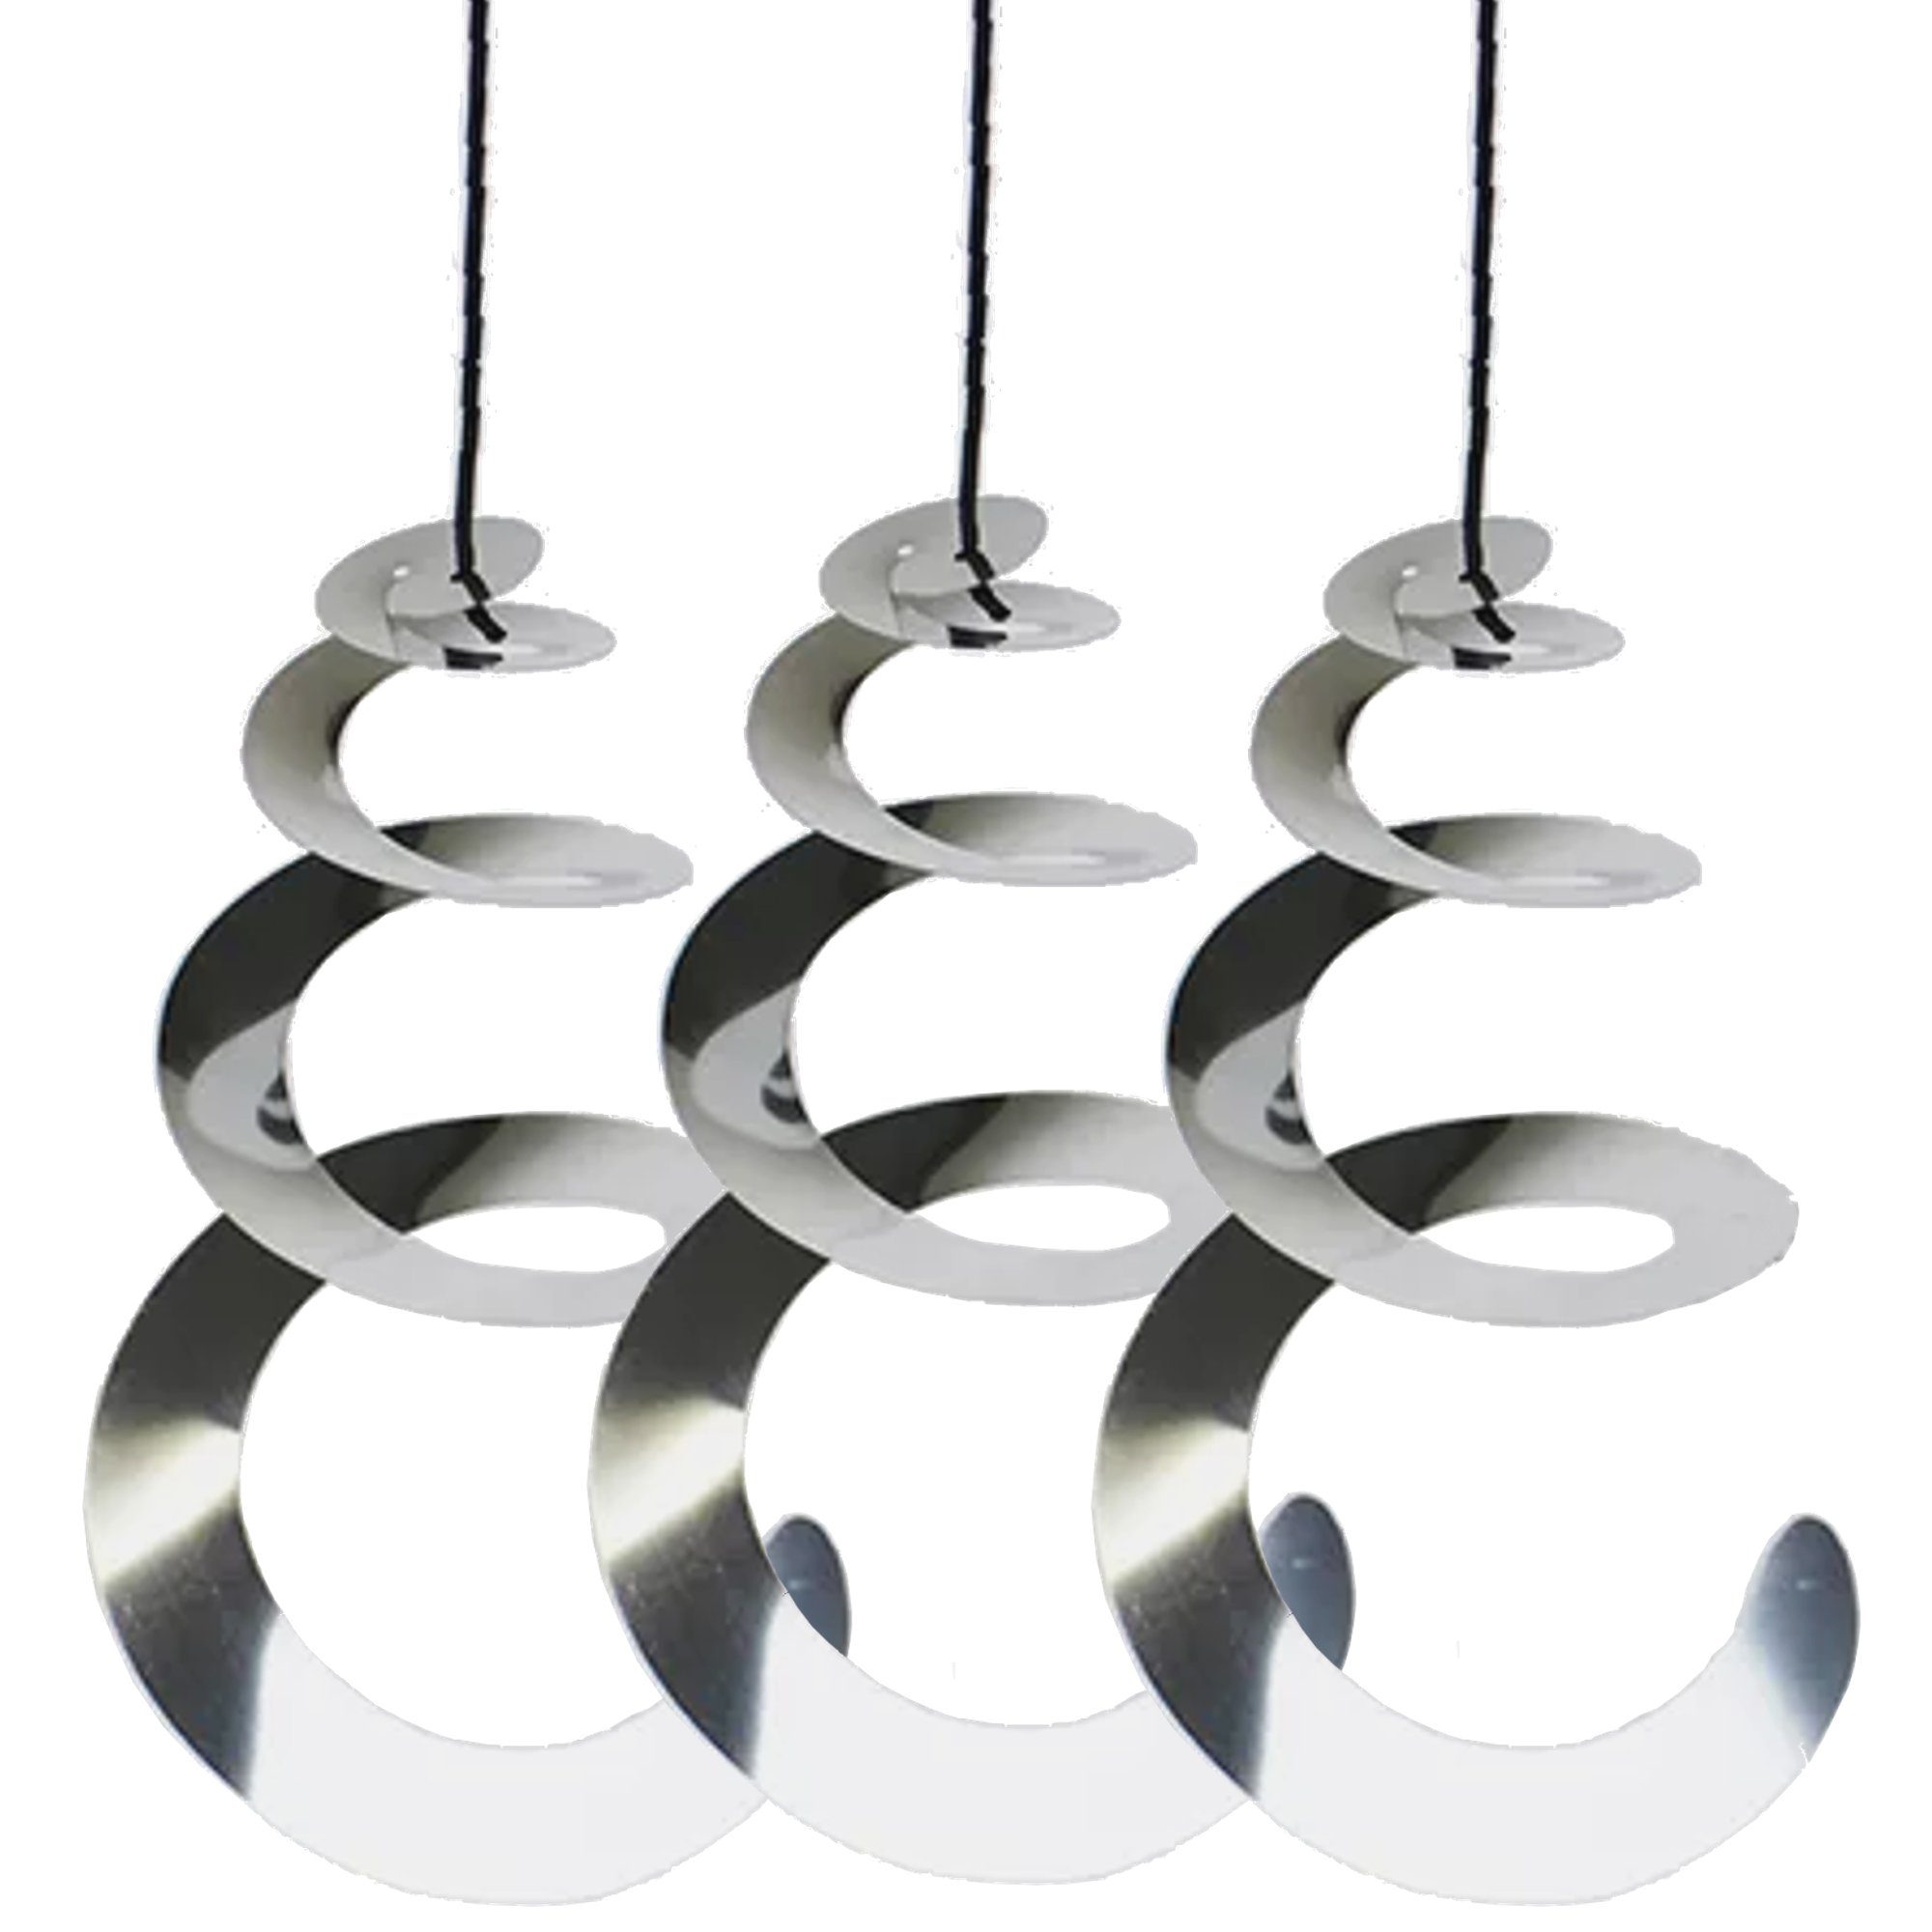 Silber) 10 Stück Vogelabwehr, reflektierende Vogelabwehr, 30 cm, 360 Grad  reflektierende Lichtspirale für Balkone, Obstbäume, Gemüsegärten.